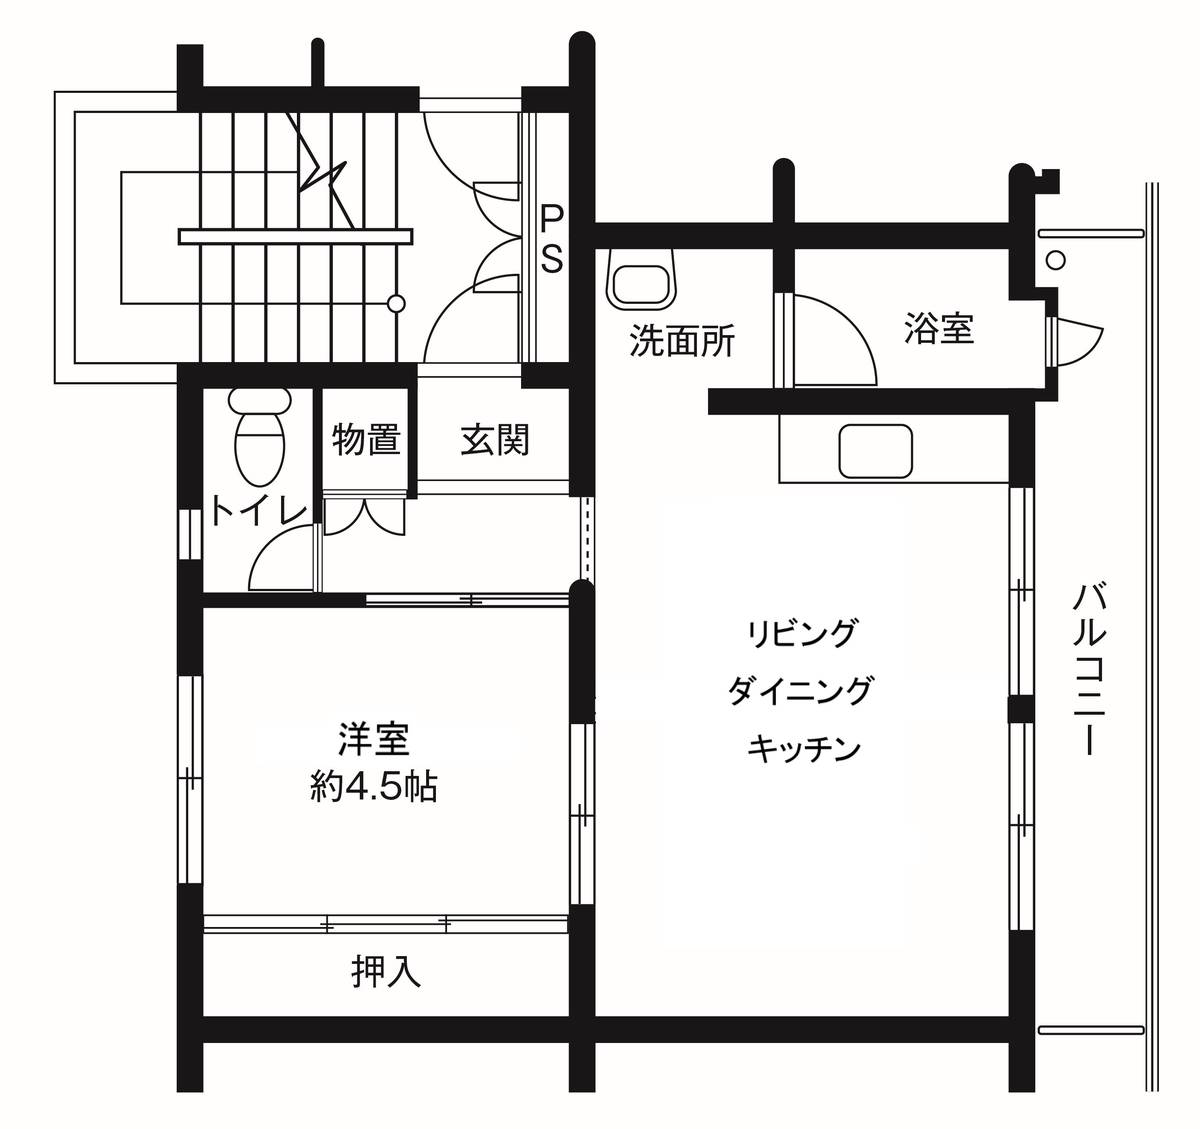 Sơ đồ phòng 1LDK của Village House Tsurugaya 5 Chome ở Miyagino-ku